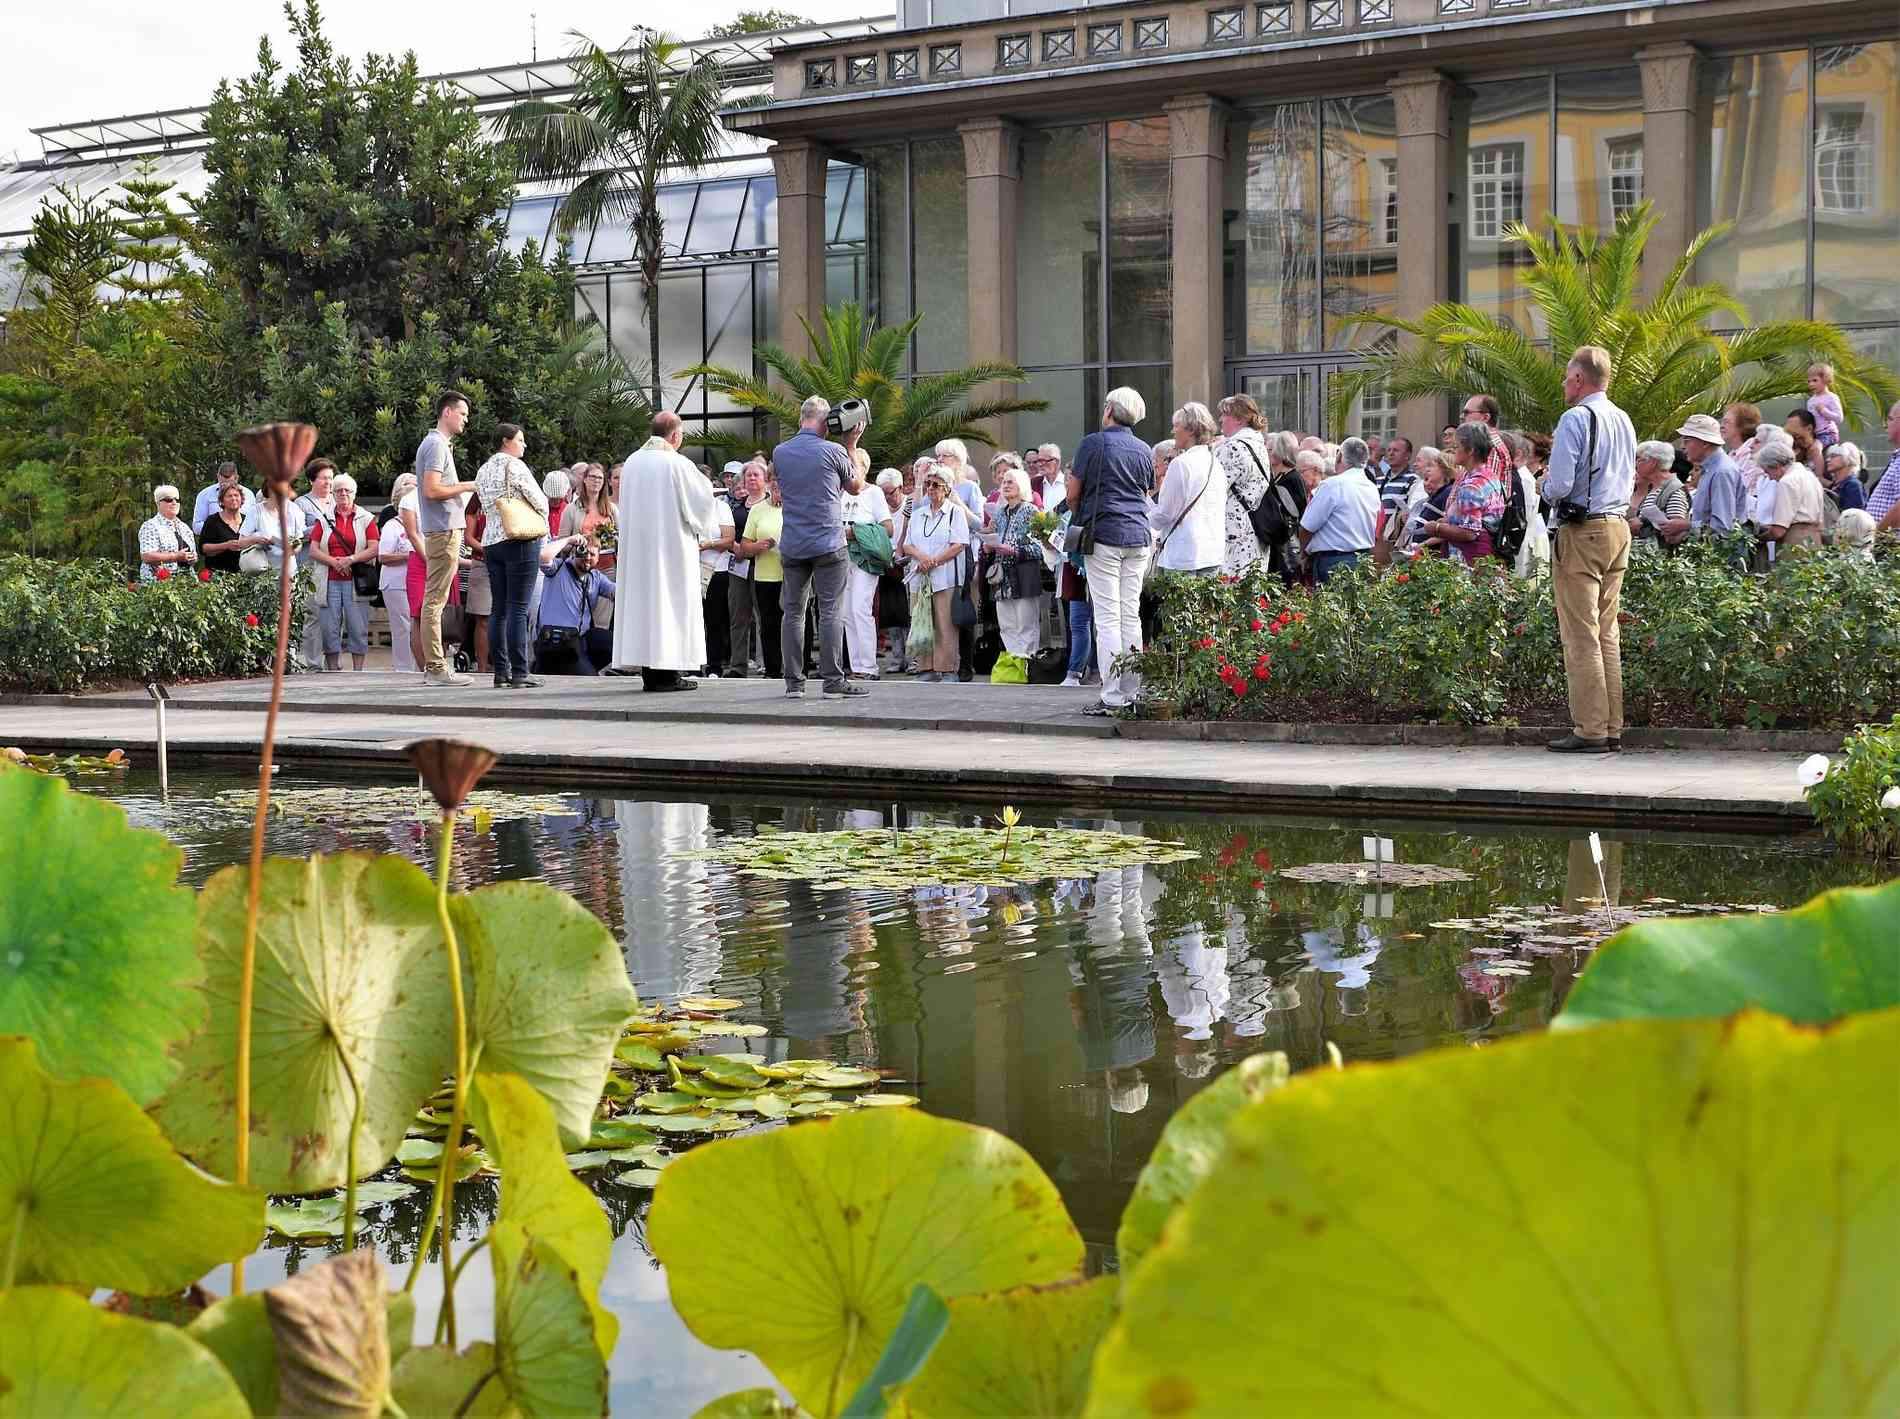 Botanischer Garten Bonn Reizend Ein Segen Für Den Kräuterstrauß Wegegottes Nst Zu Mariä